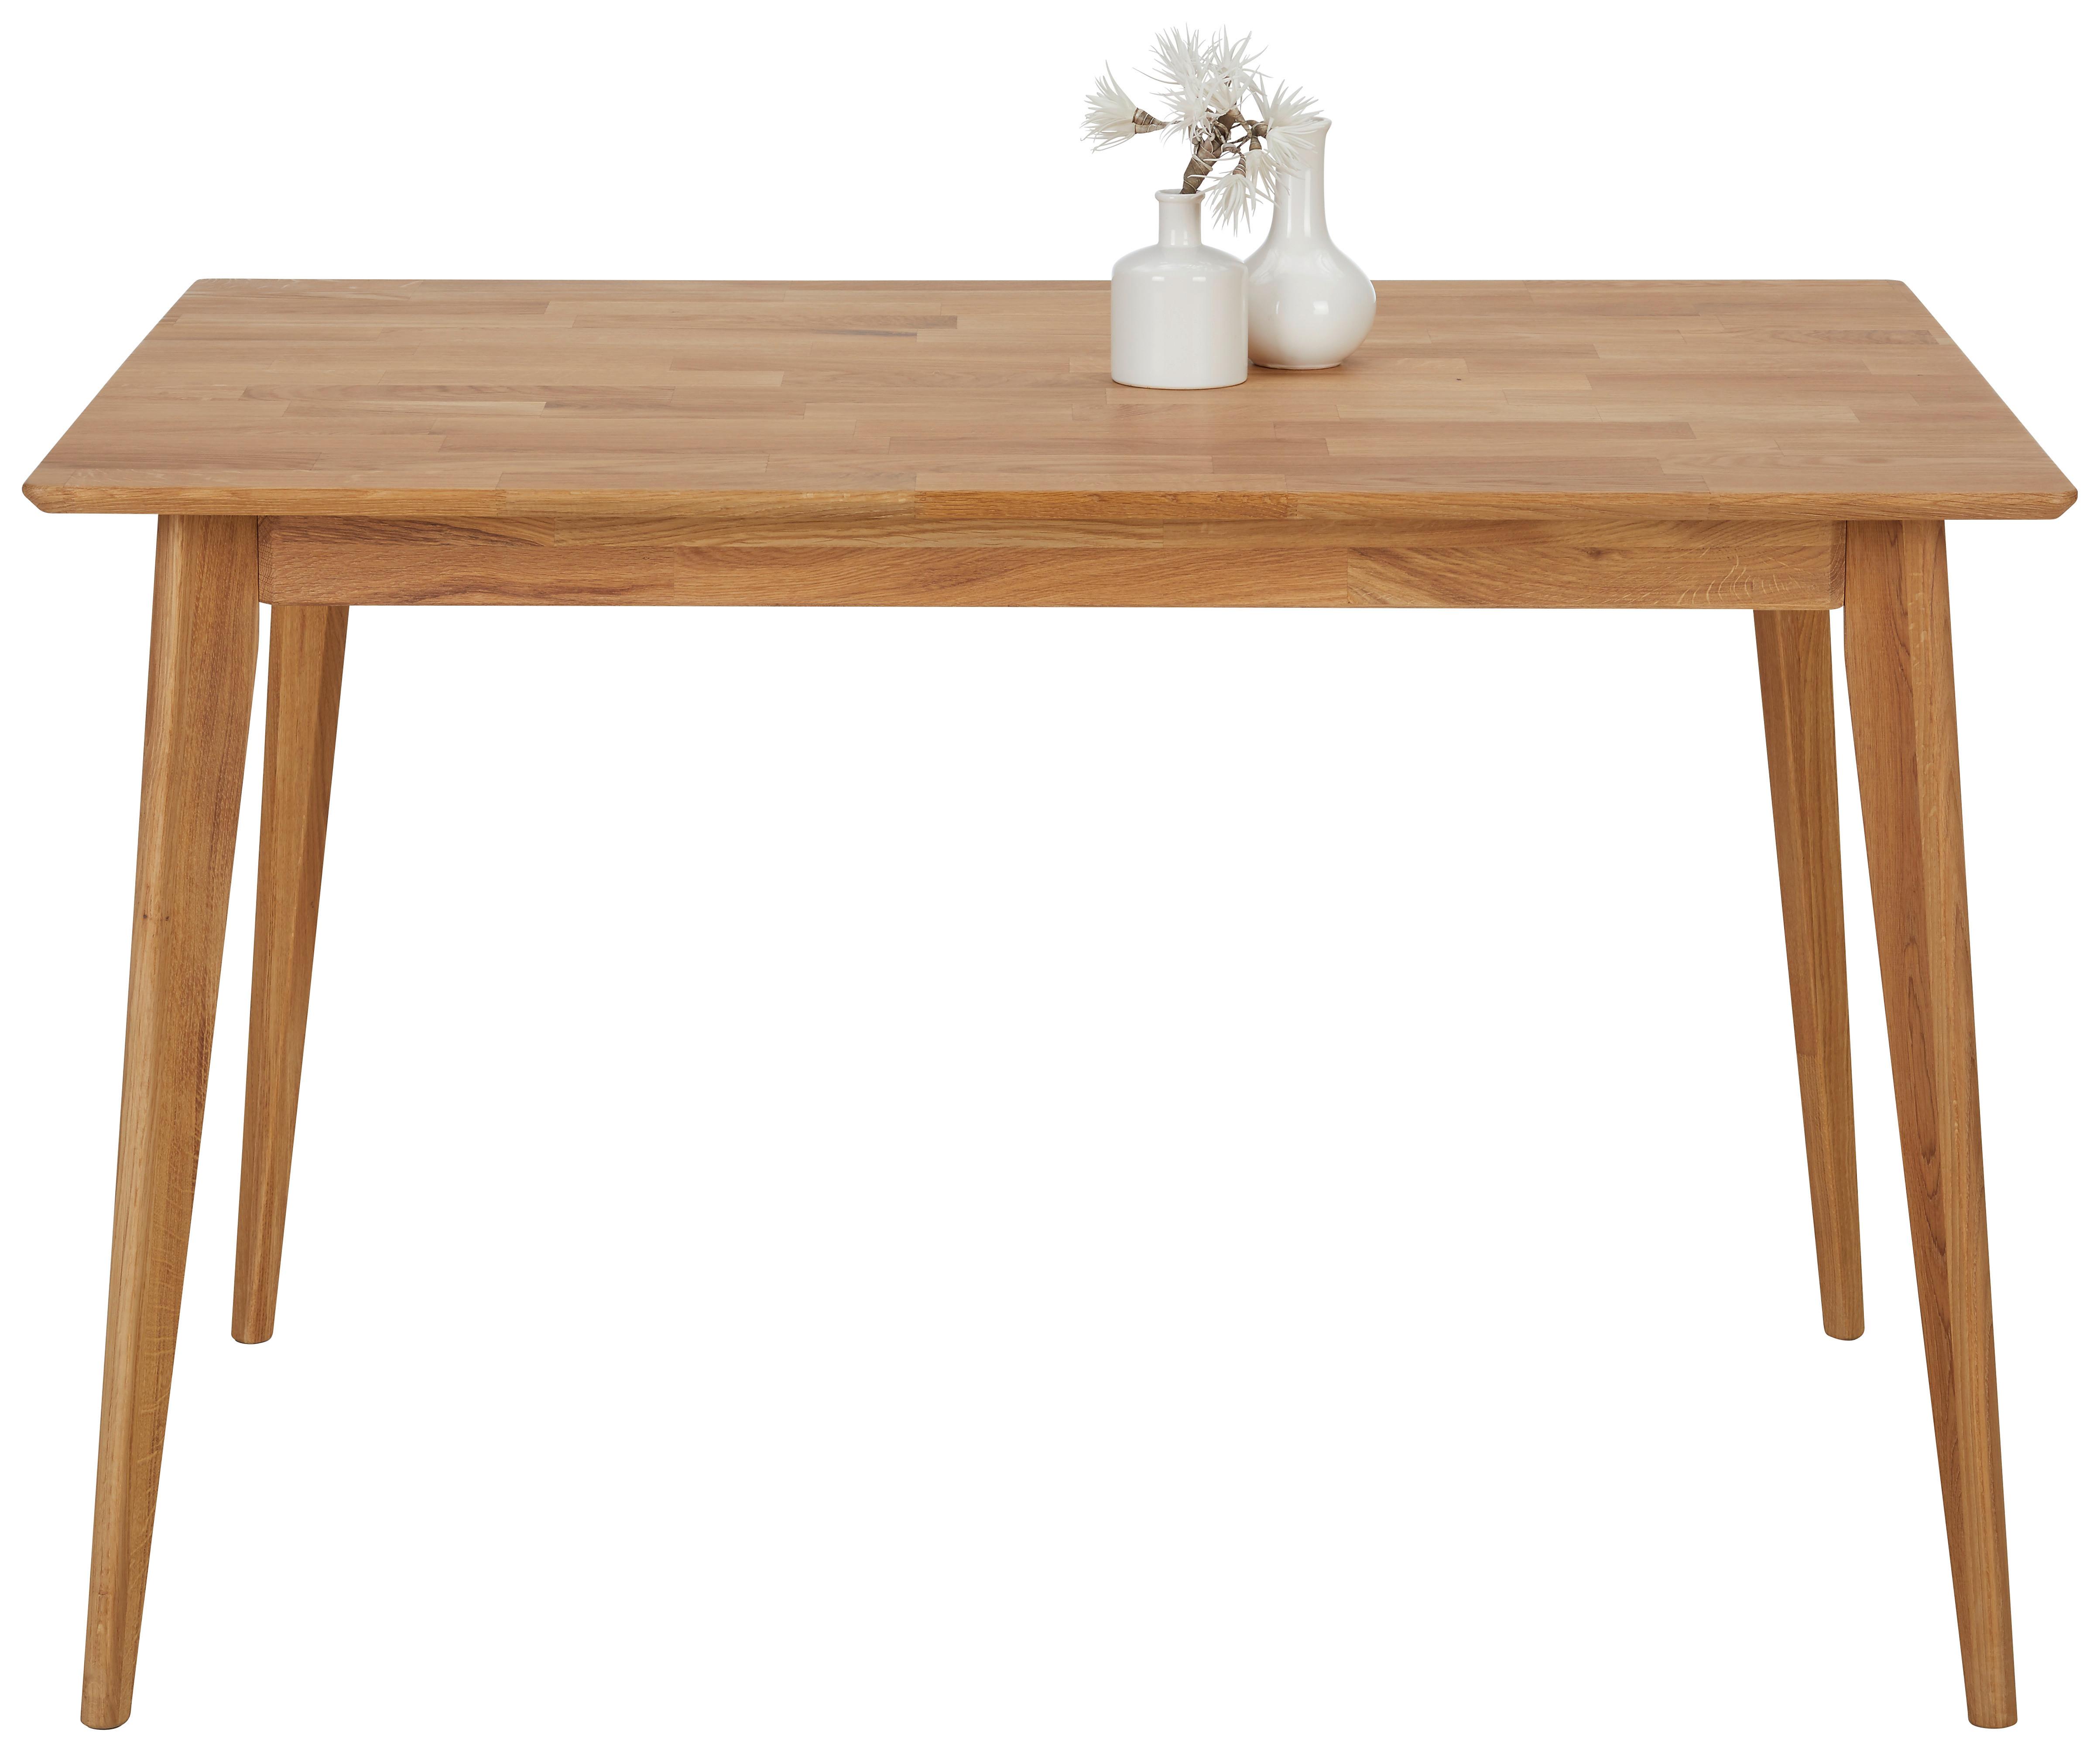 Jídelní Stůl Rita, 120x80 Cm, Divý Dub - barvy dubu, Konvenční, dřevo (120/80/75cm) - Zandiara